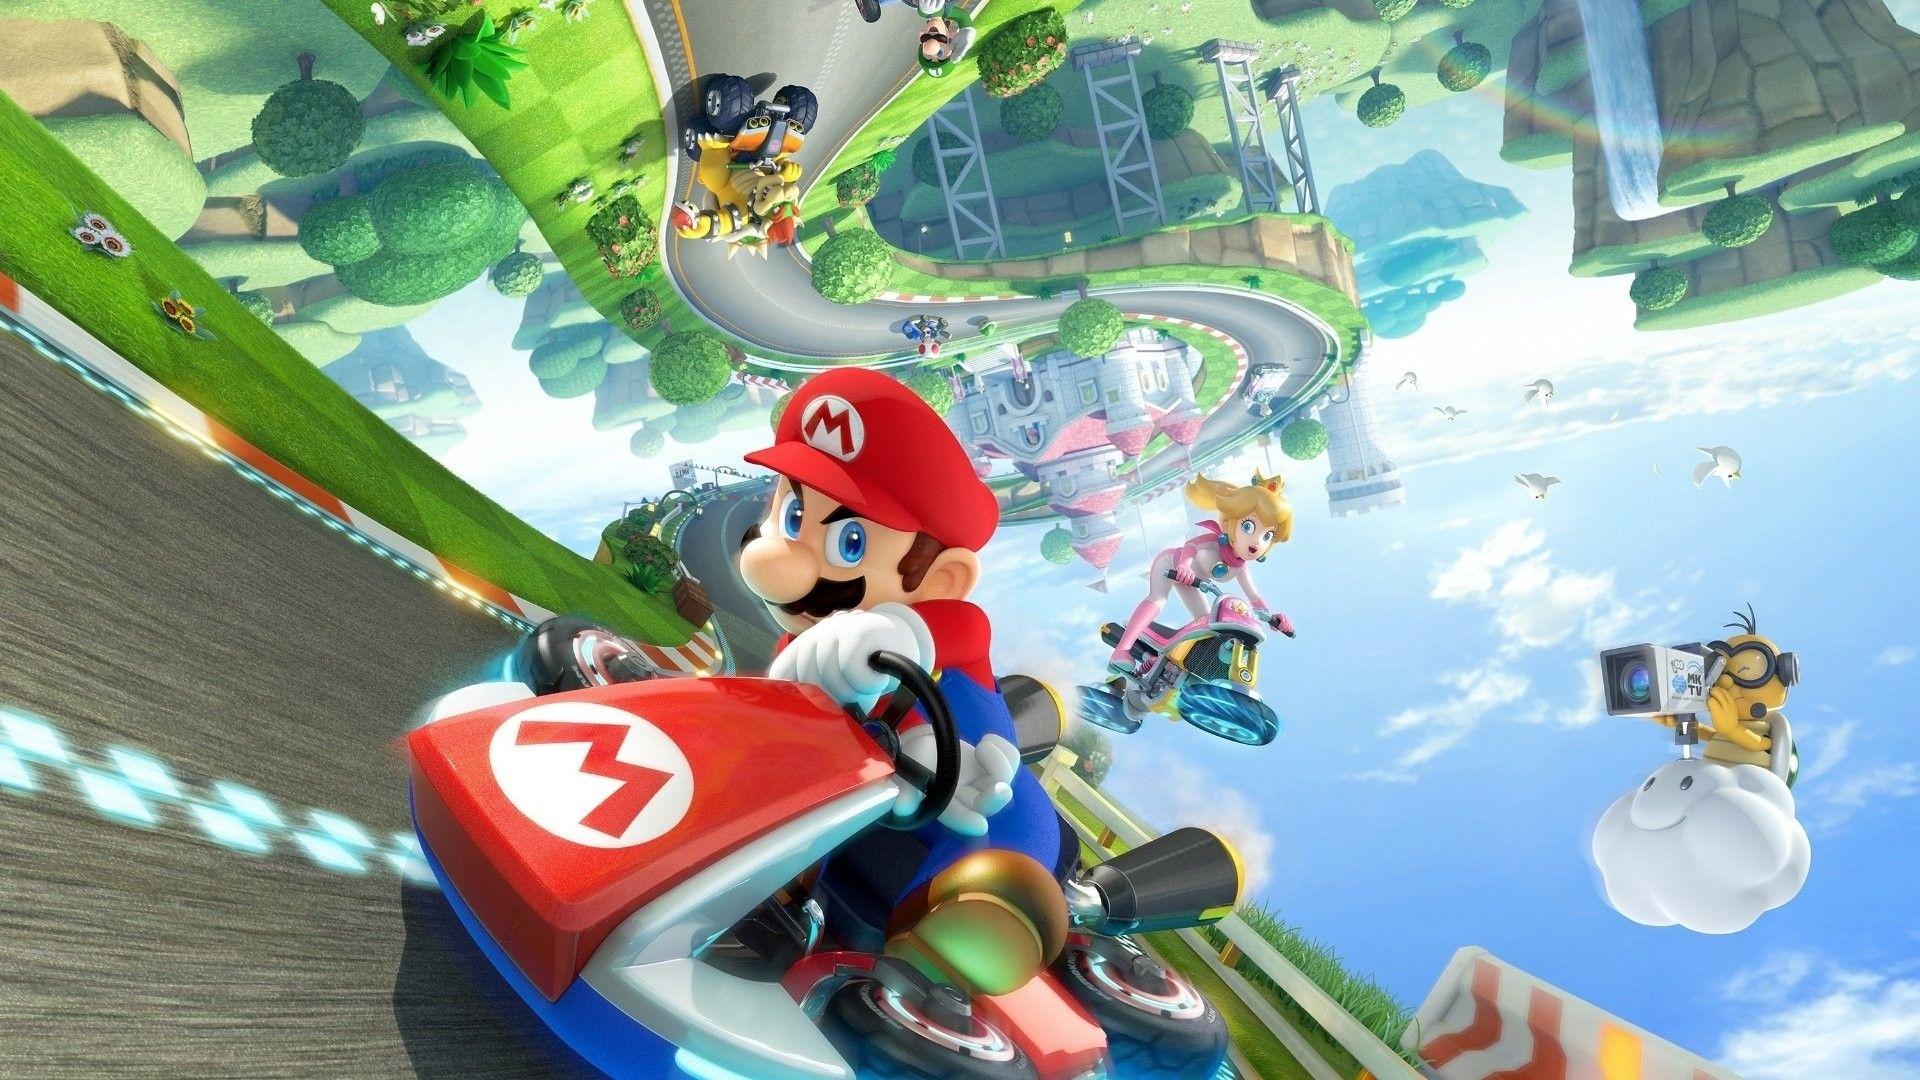 Mario Kart Wallpaper Free Mario Kart Background